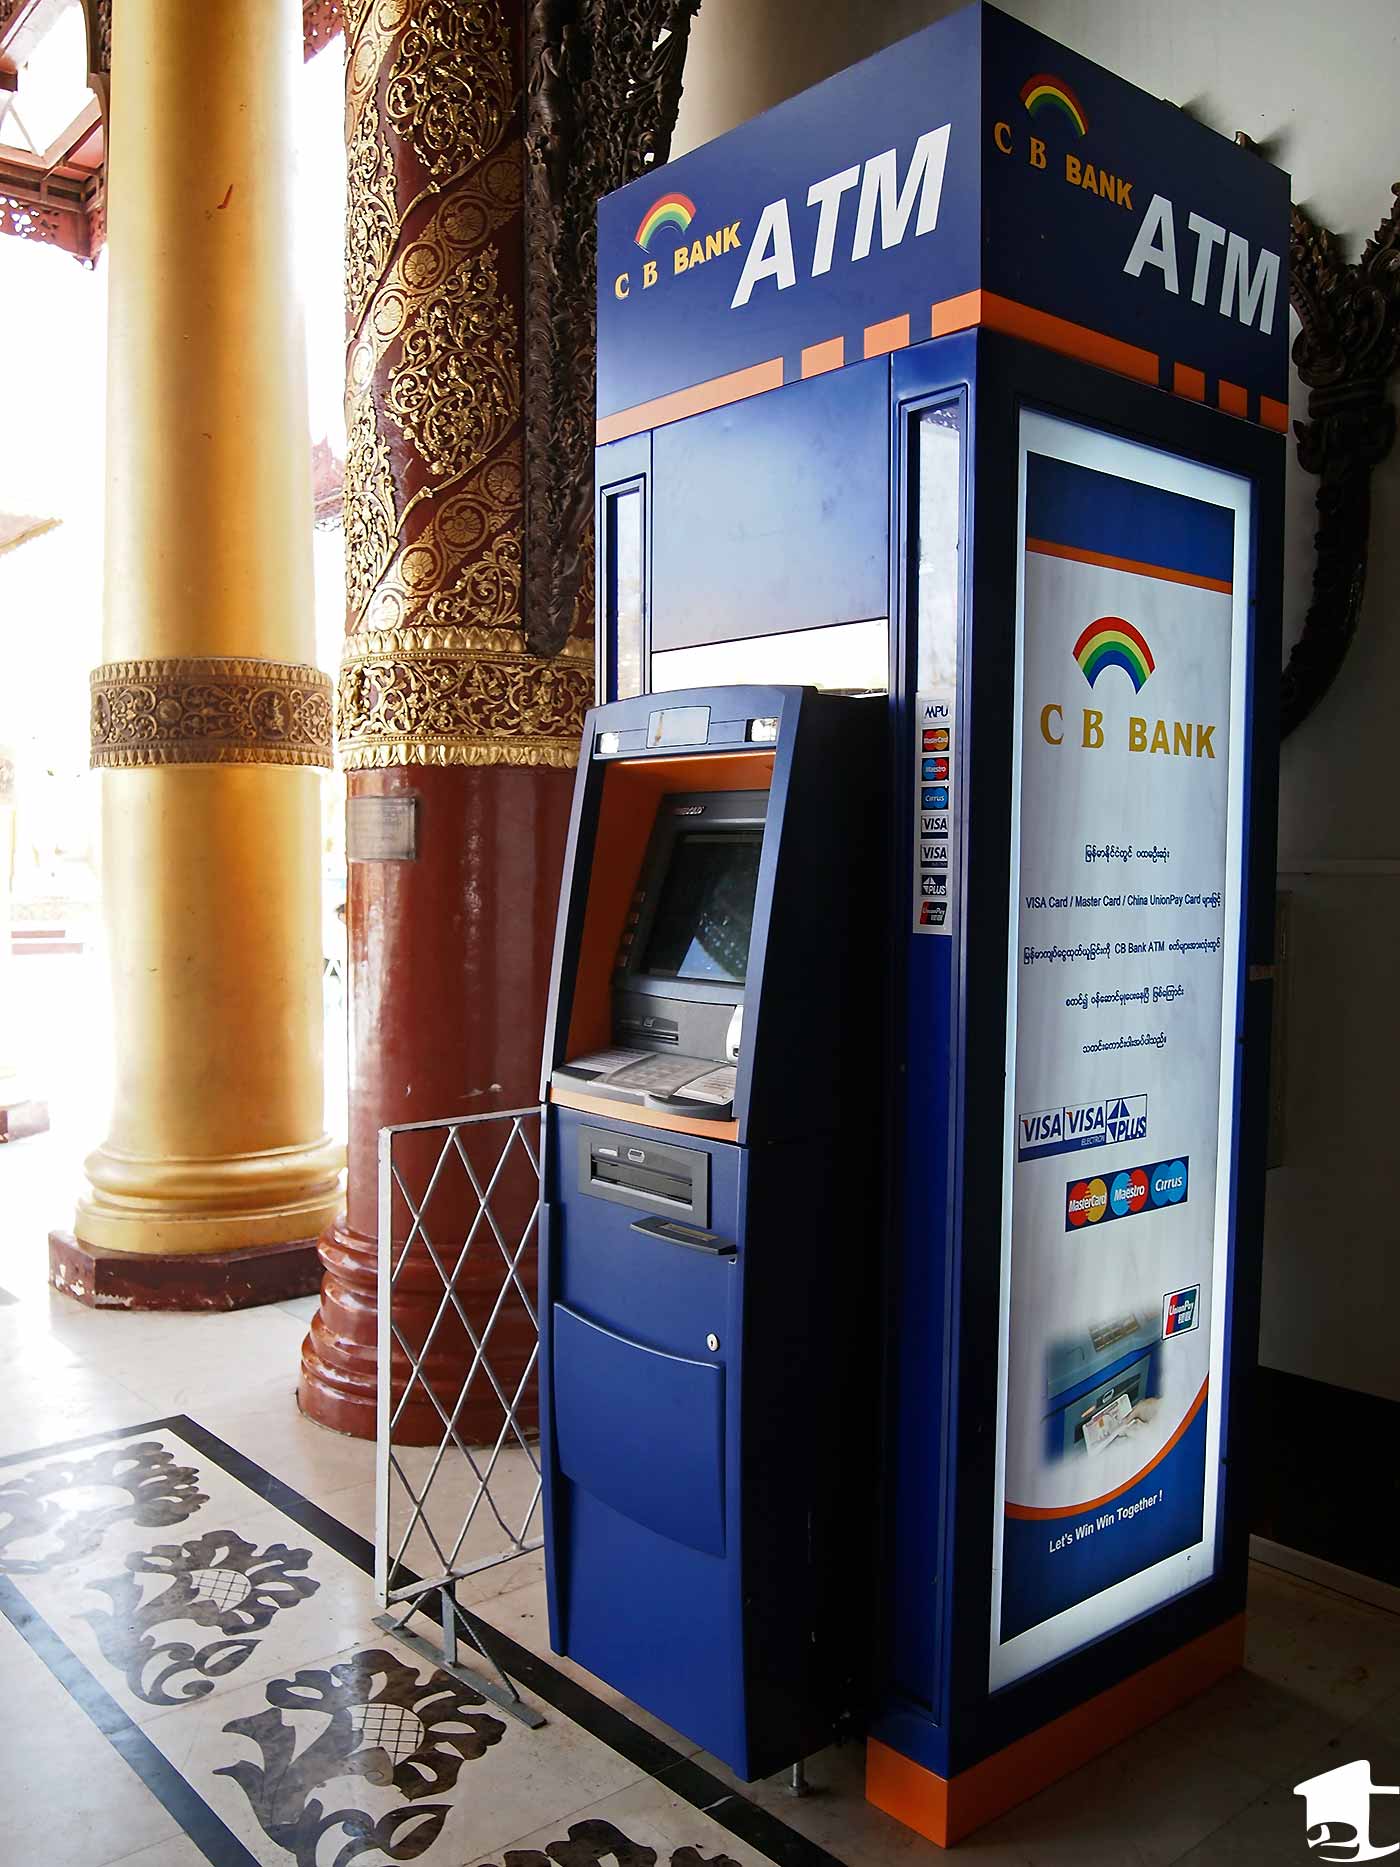 ATM at Shwedagon Paya